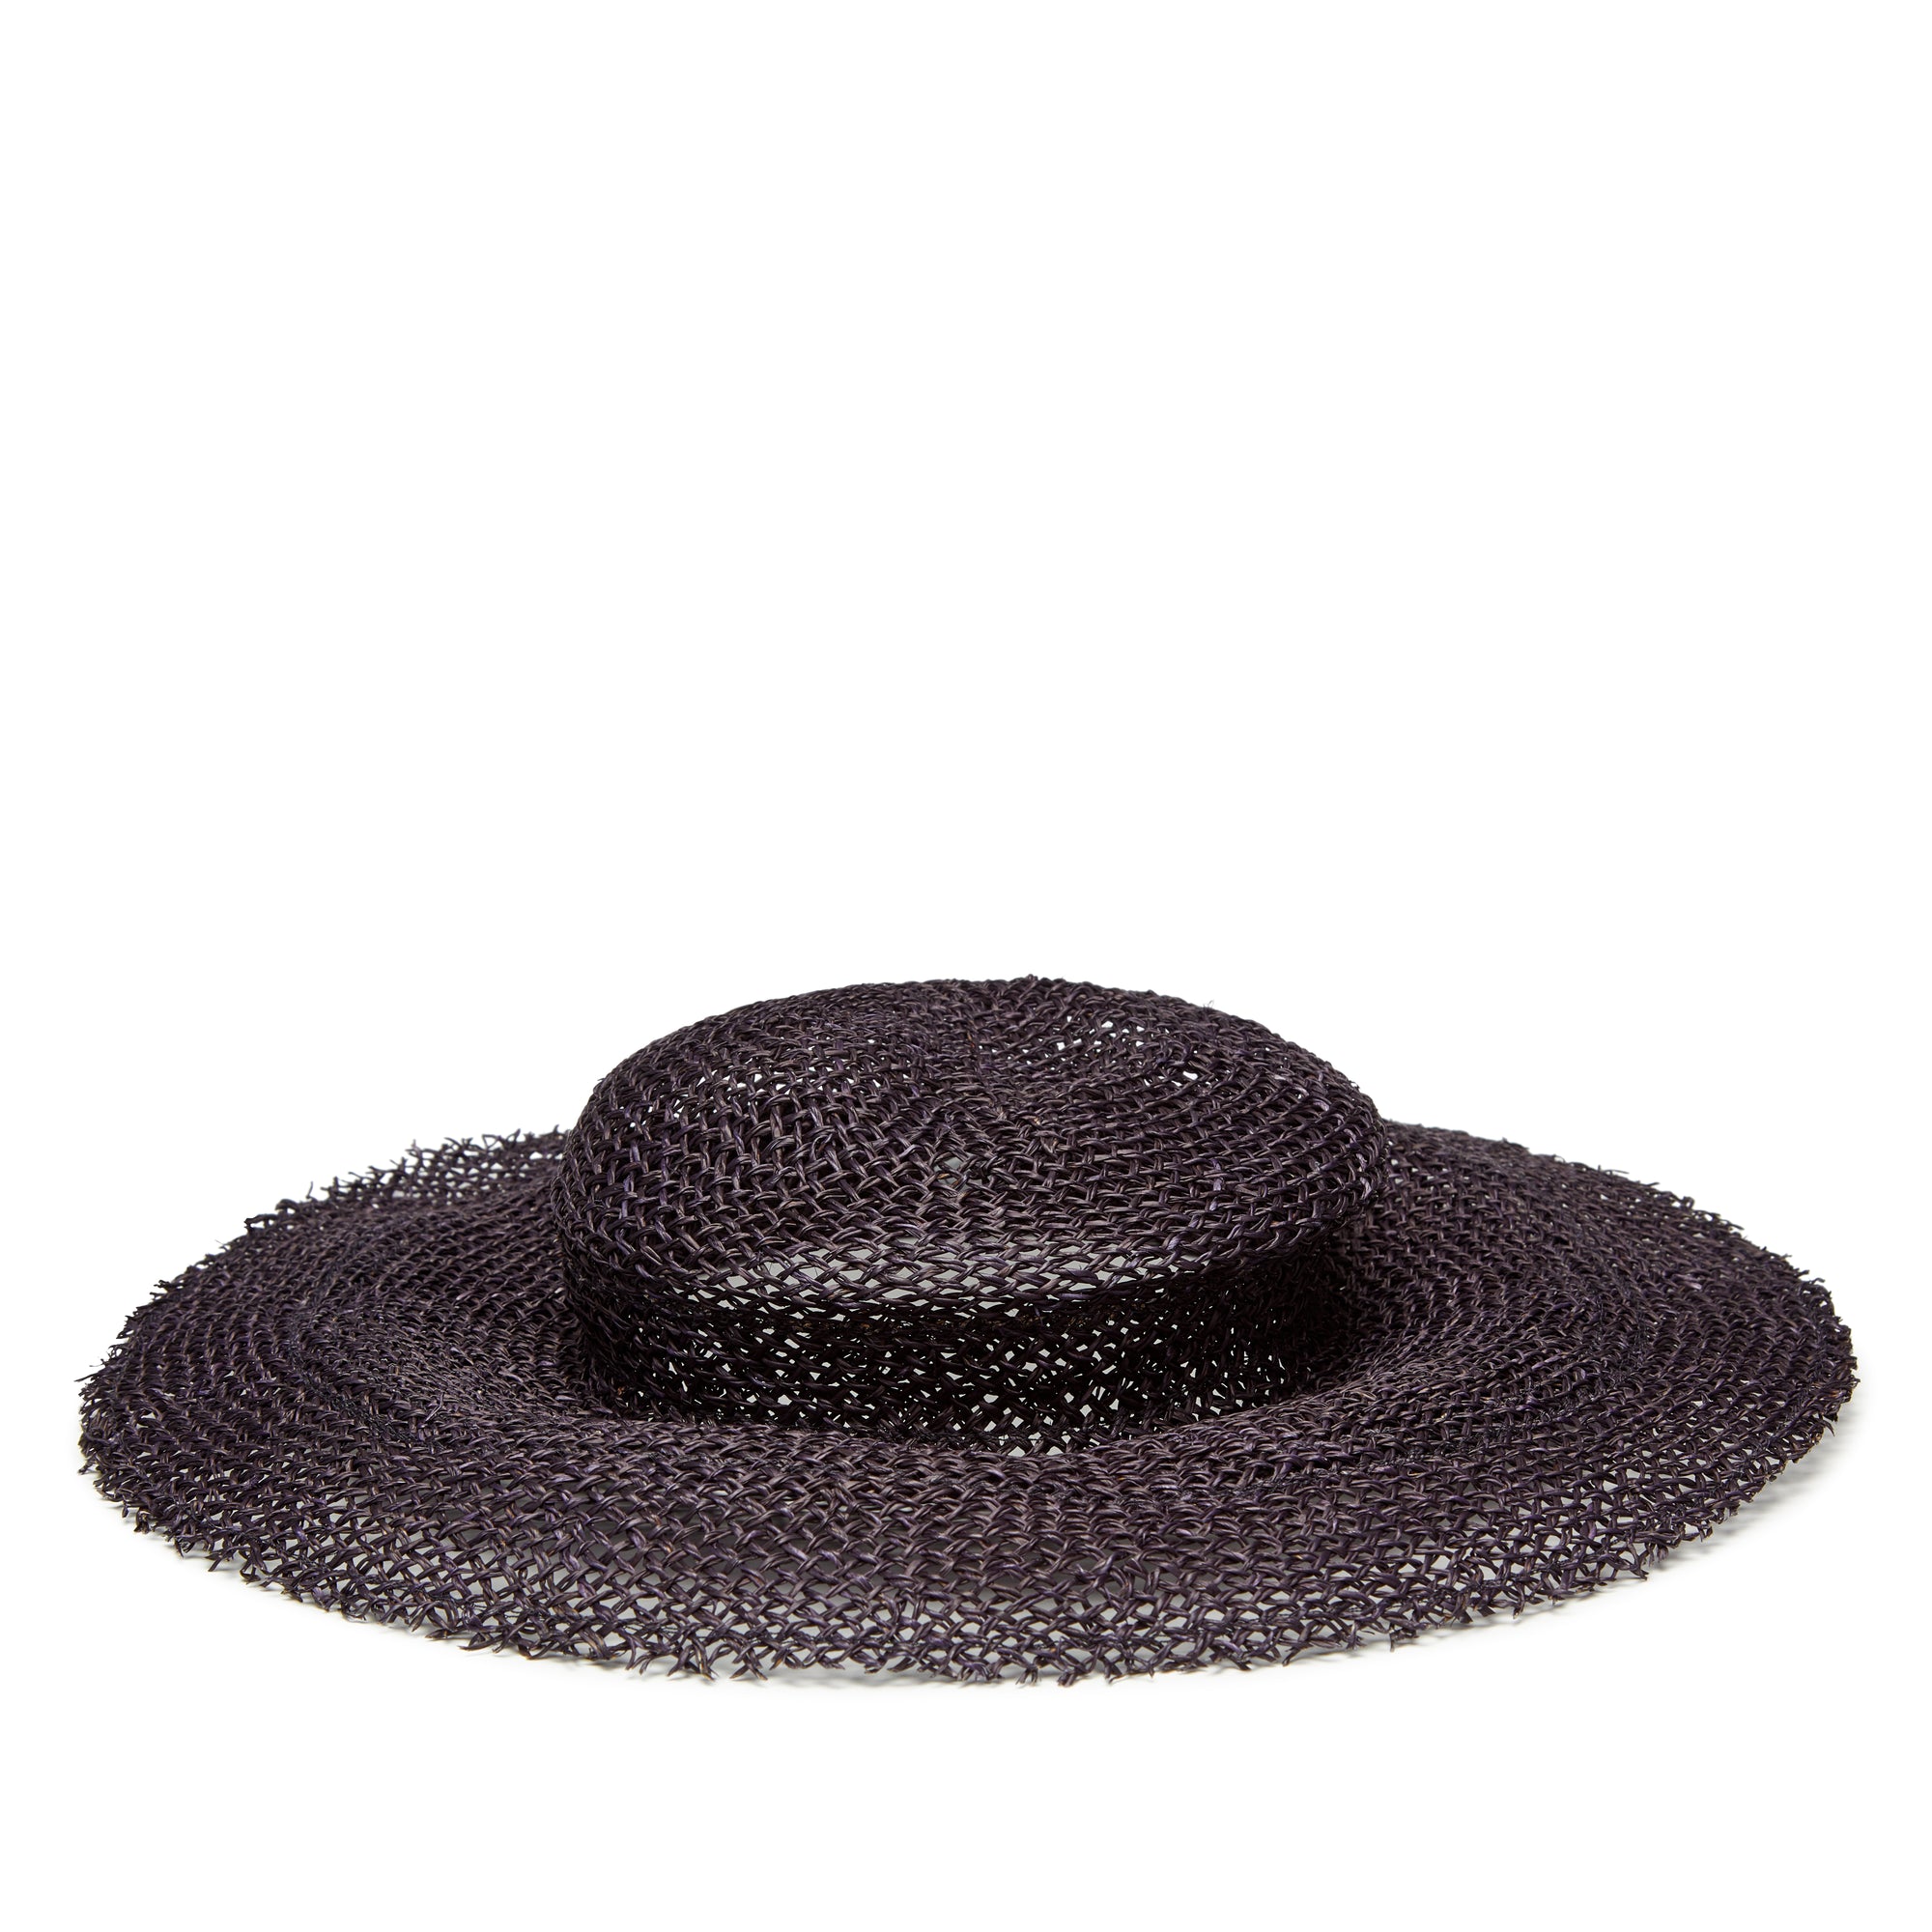 Scha - Women's Traveler Short Unique Woven Hat - (Black) view 1